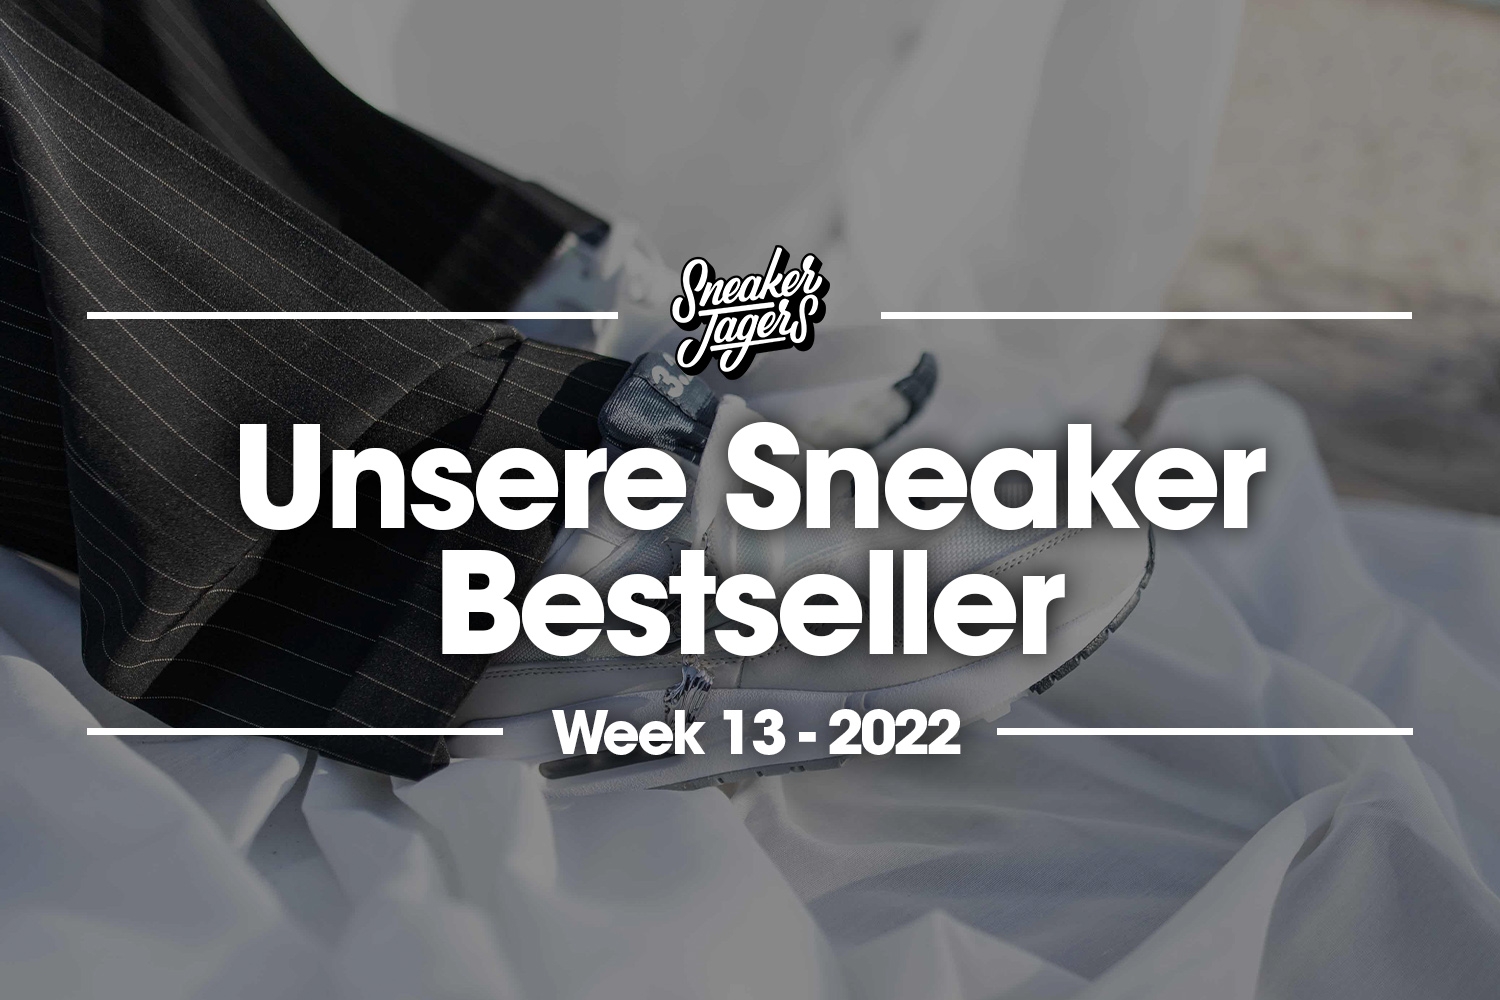 Unsere Sneaker Bestseller - Woche 13 - Das ist im Trend